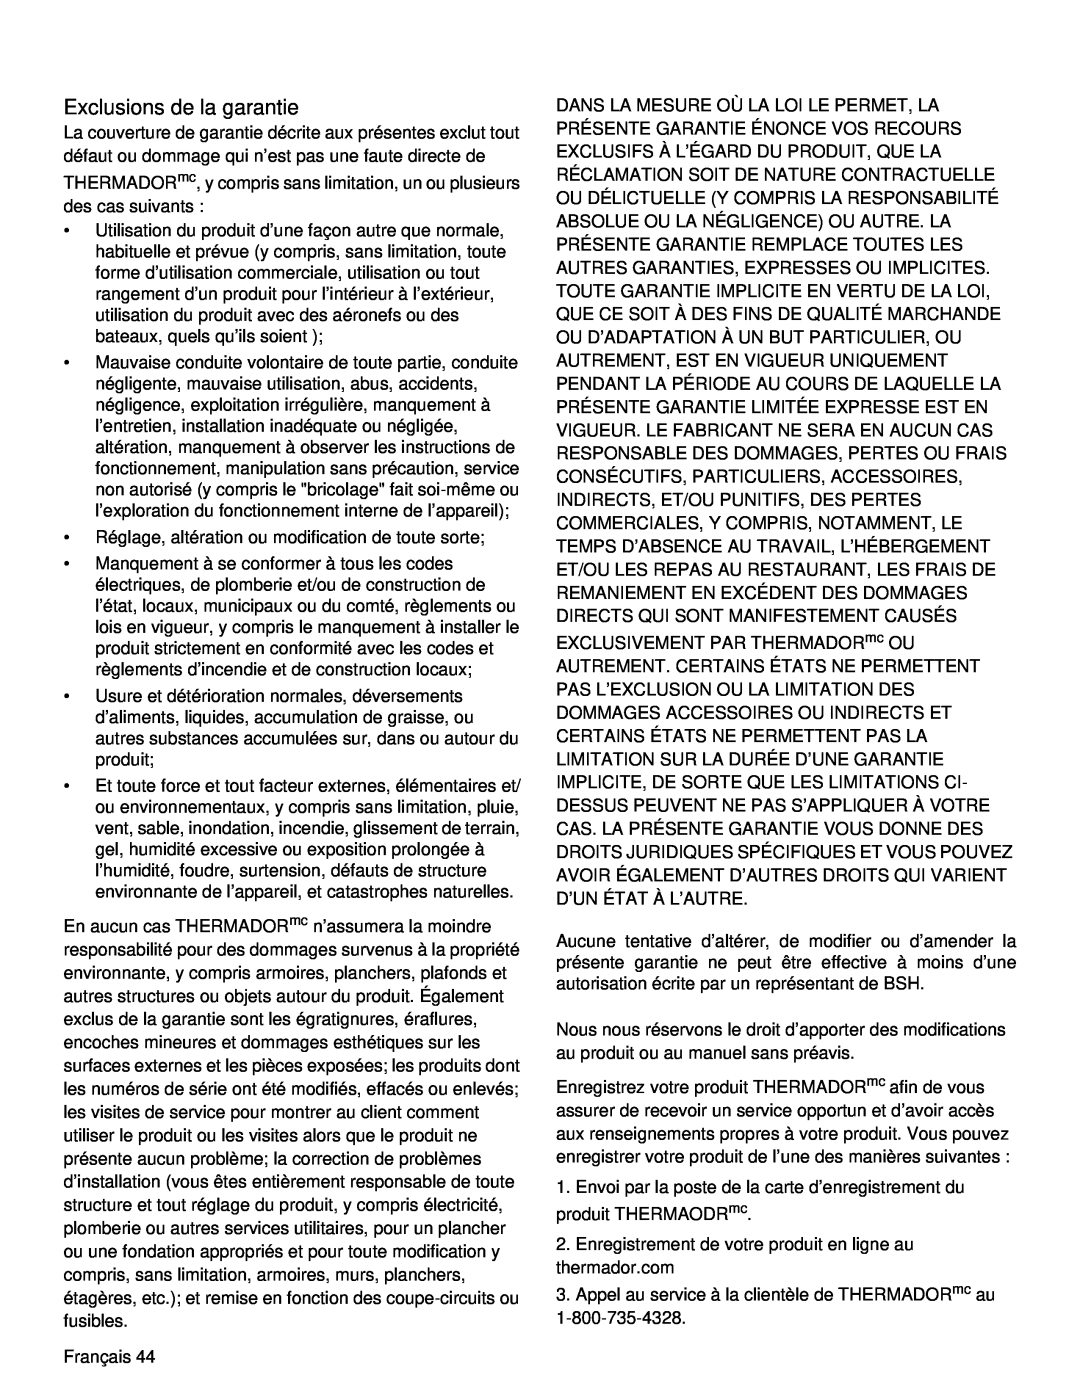 Thermador PRD36, PRD48 manual Exclusions de la garantie 